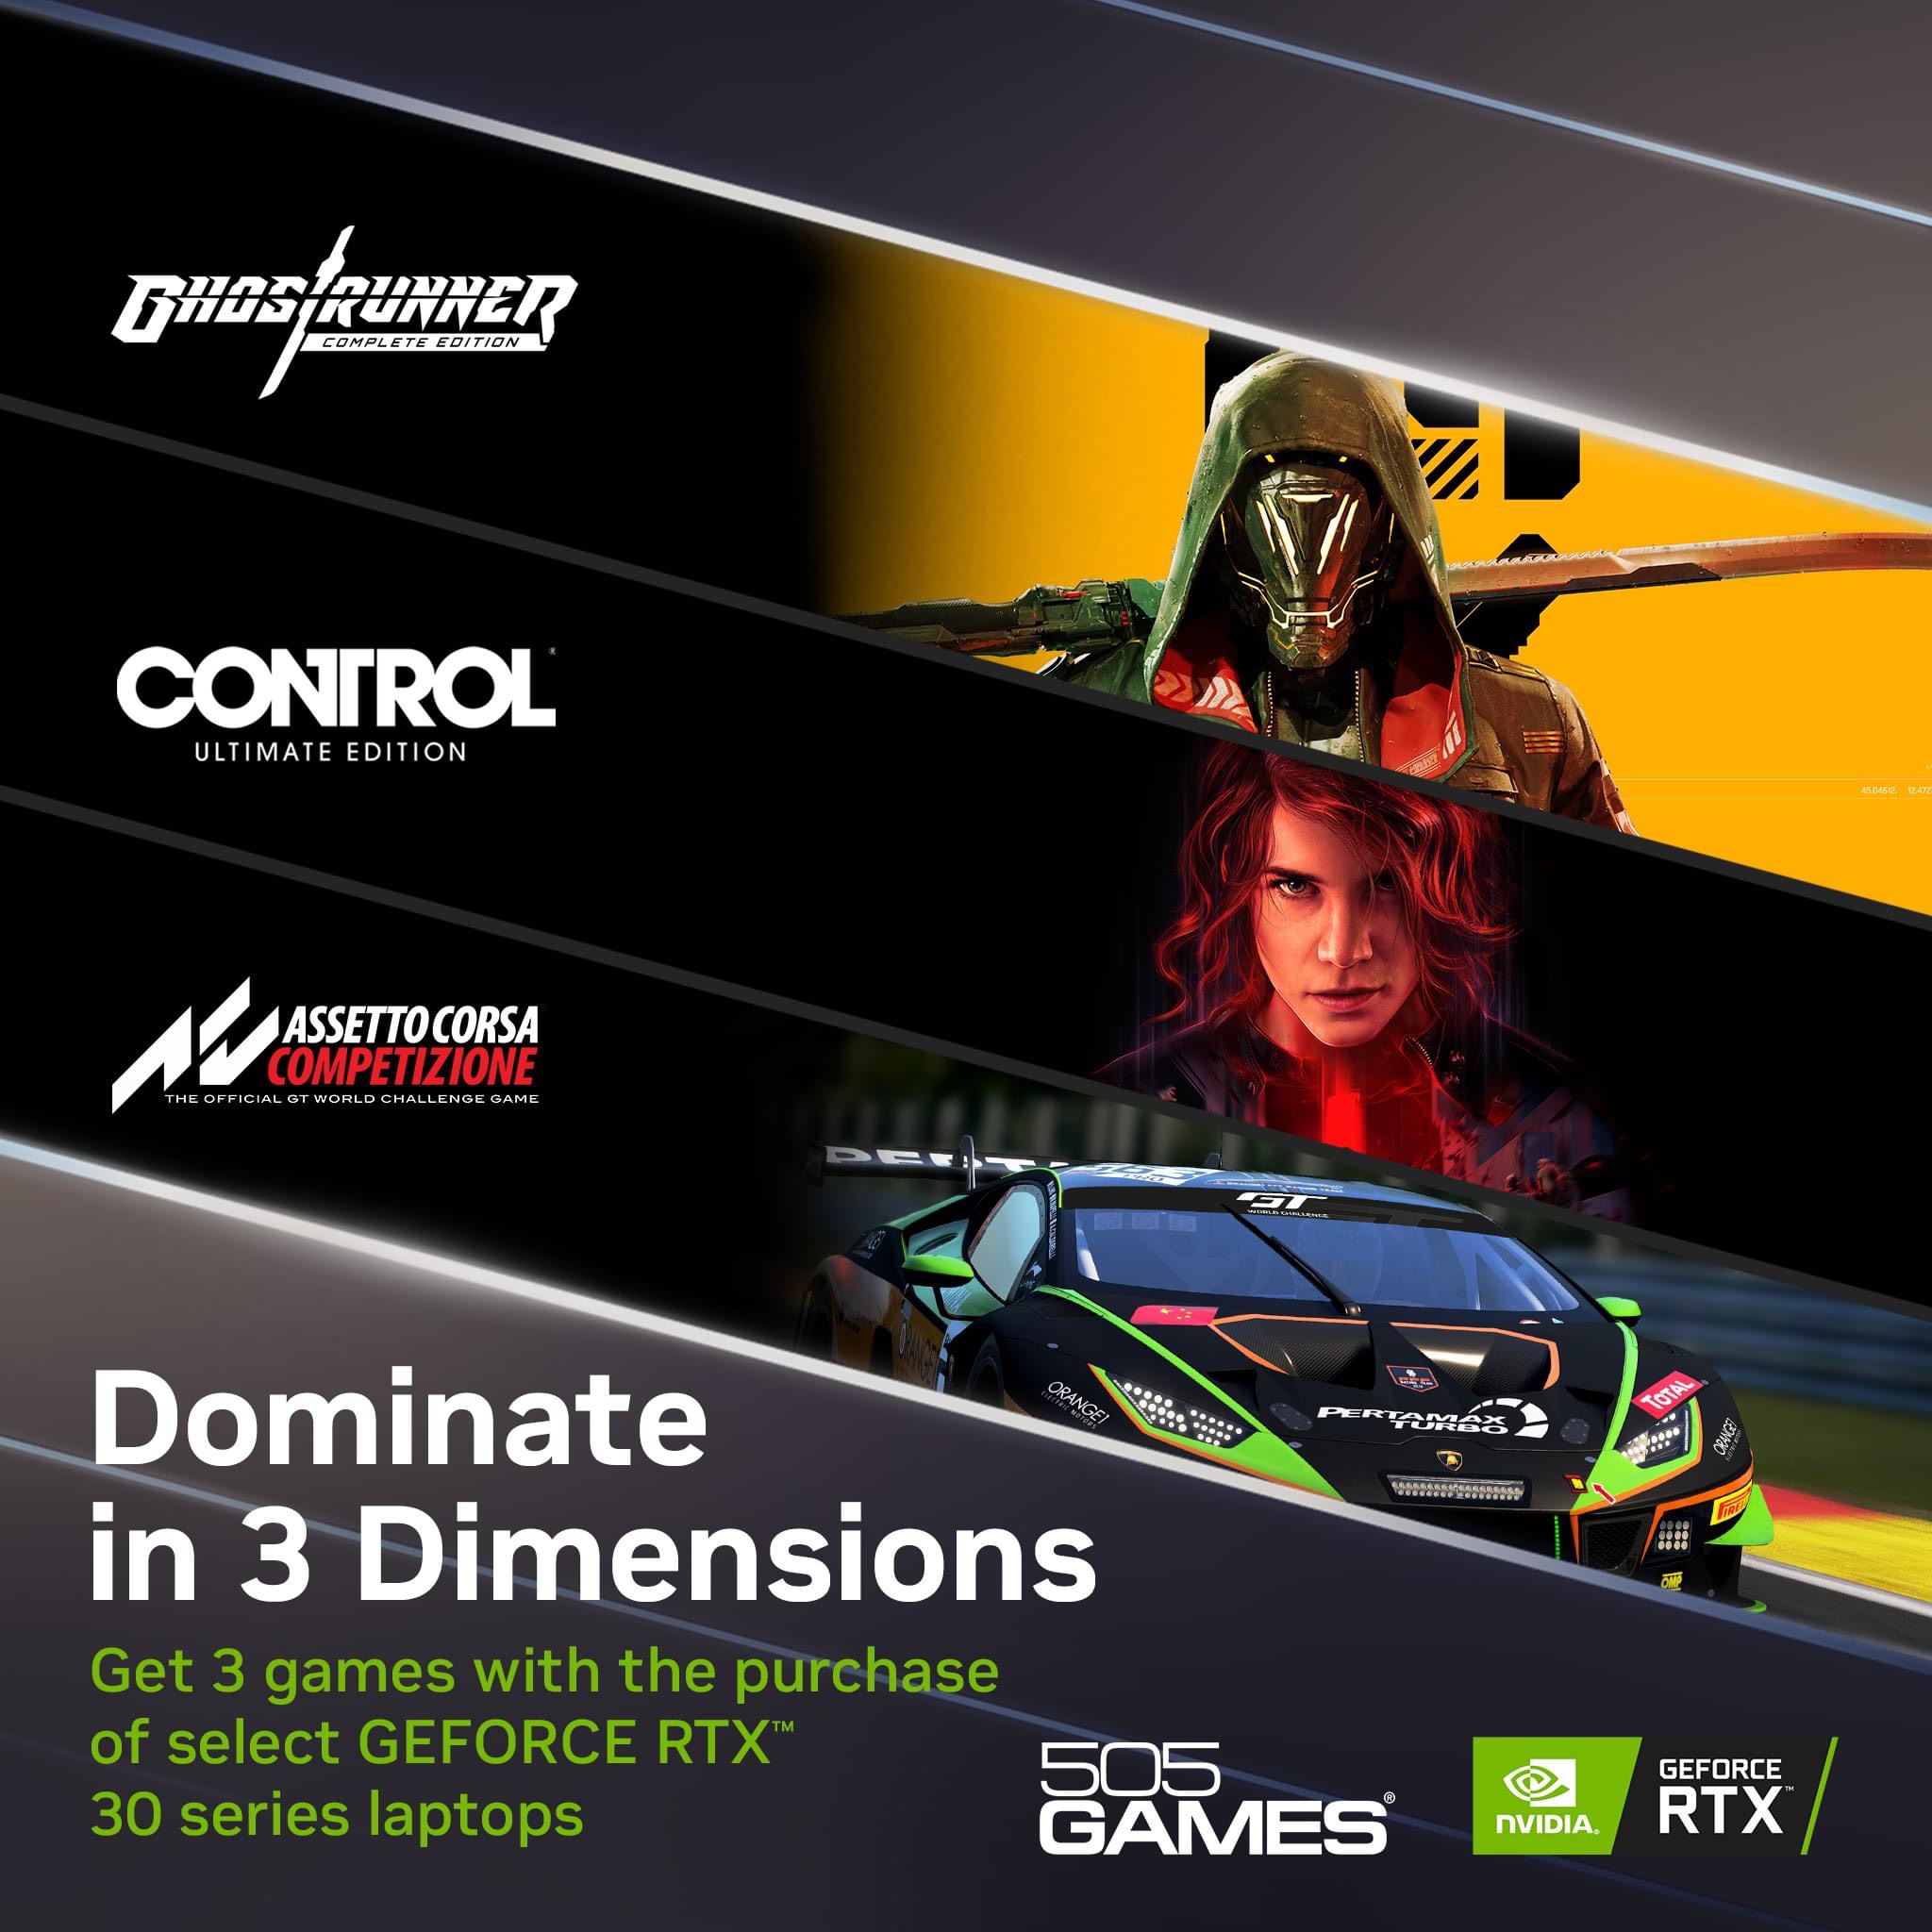 Cơ hội nhận 3 games miễn phí khi mua sản phẩm GeForce RTX™ 30 Series Laptop